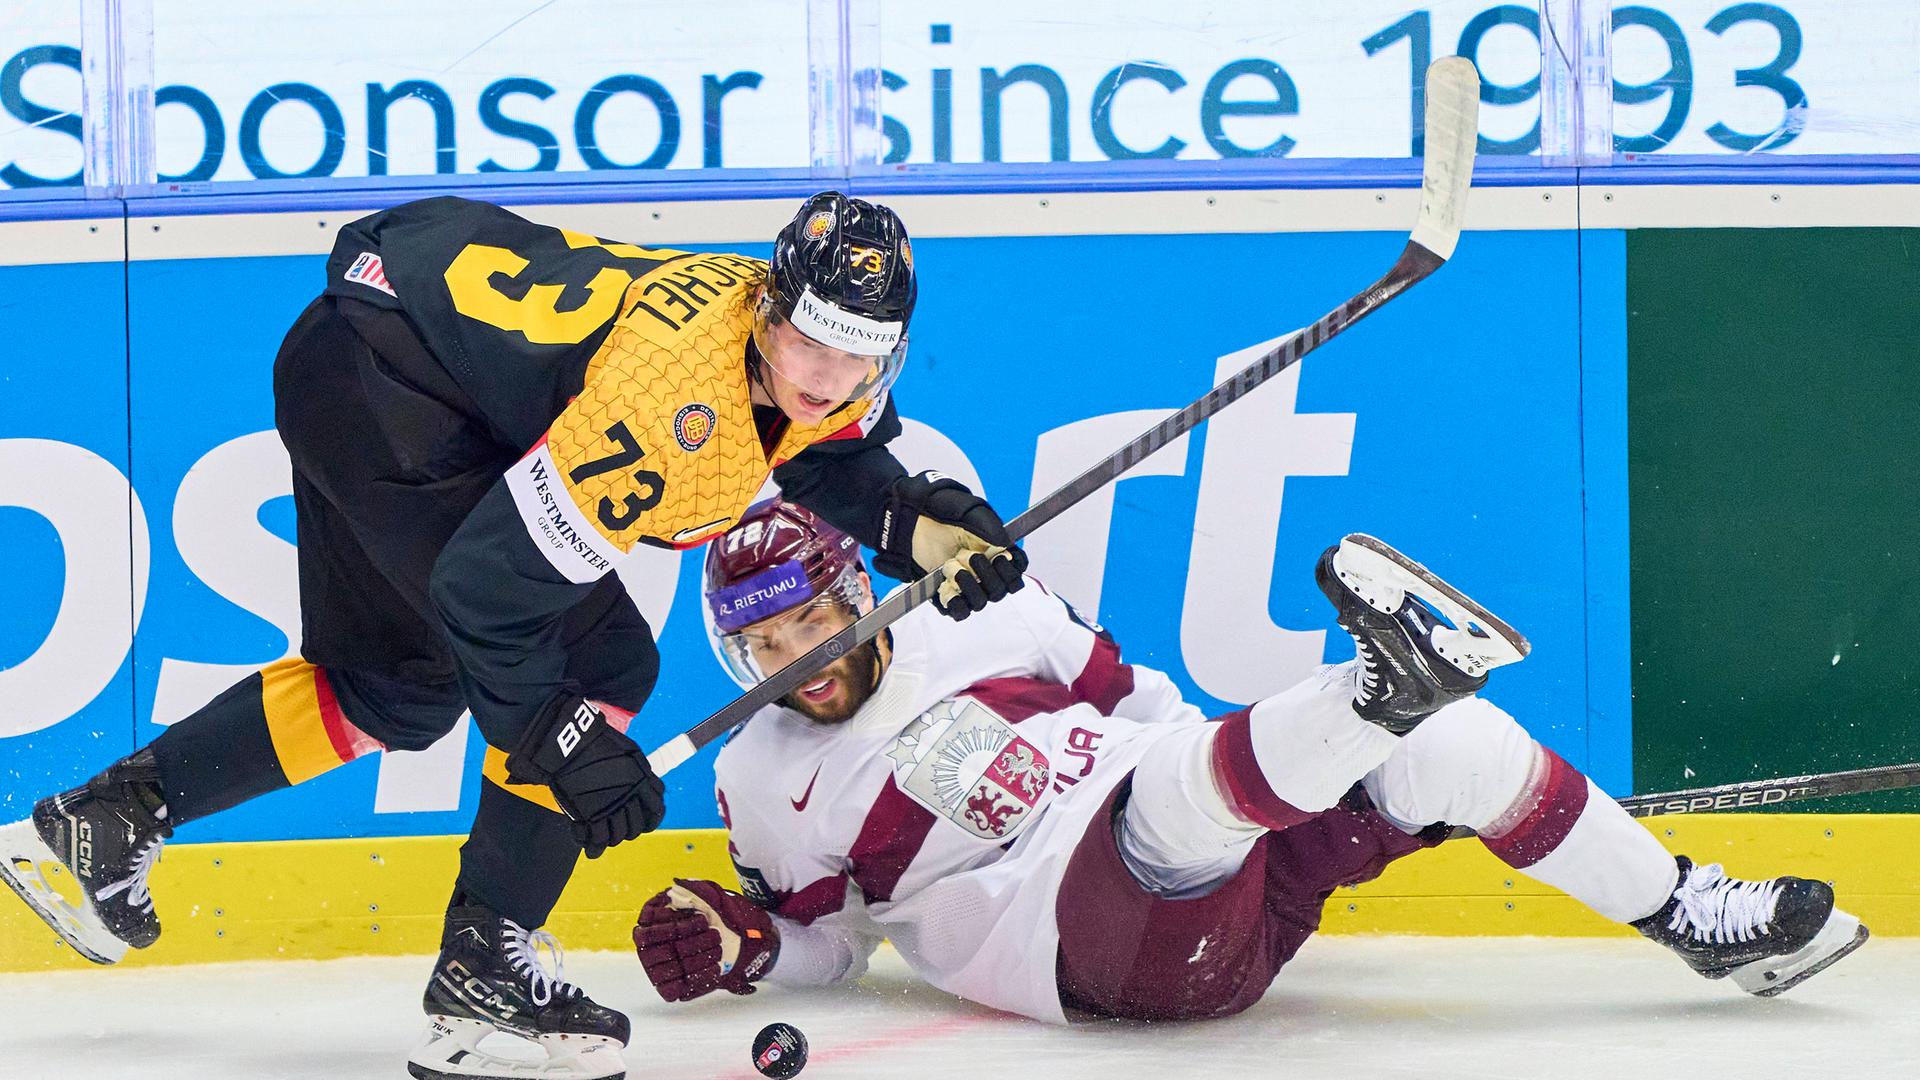 Der deutsche Eishockey-Nationalspieler Lukas Reichel setzt sicih im WM-Spiel gegen Lettland an der Bande durch.